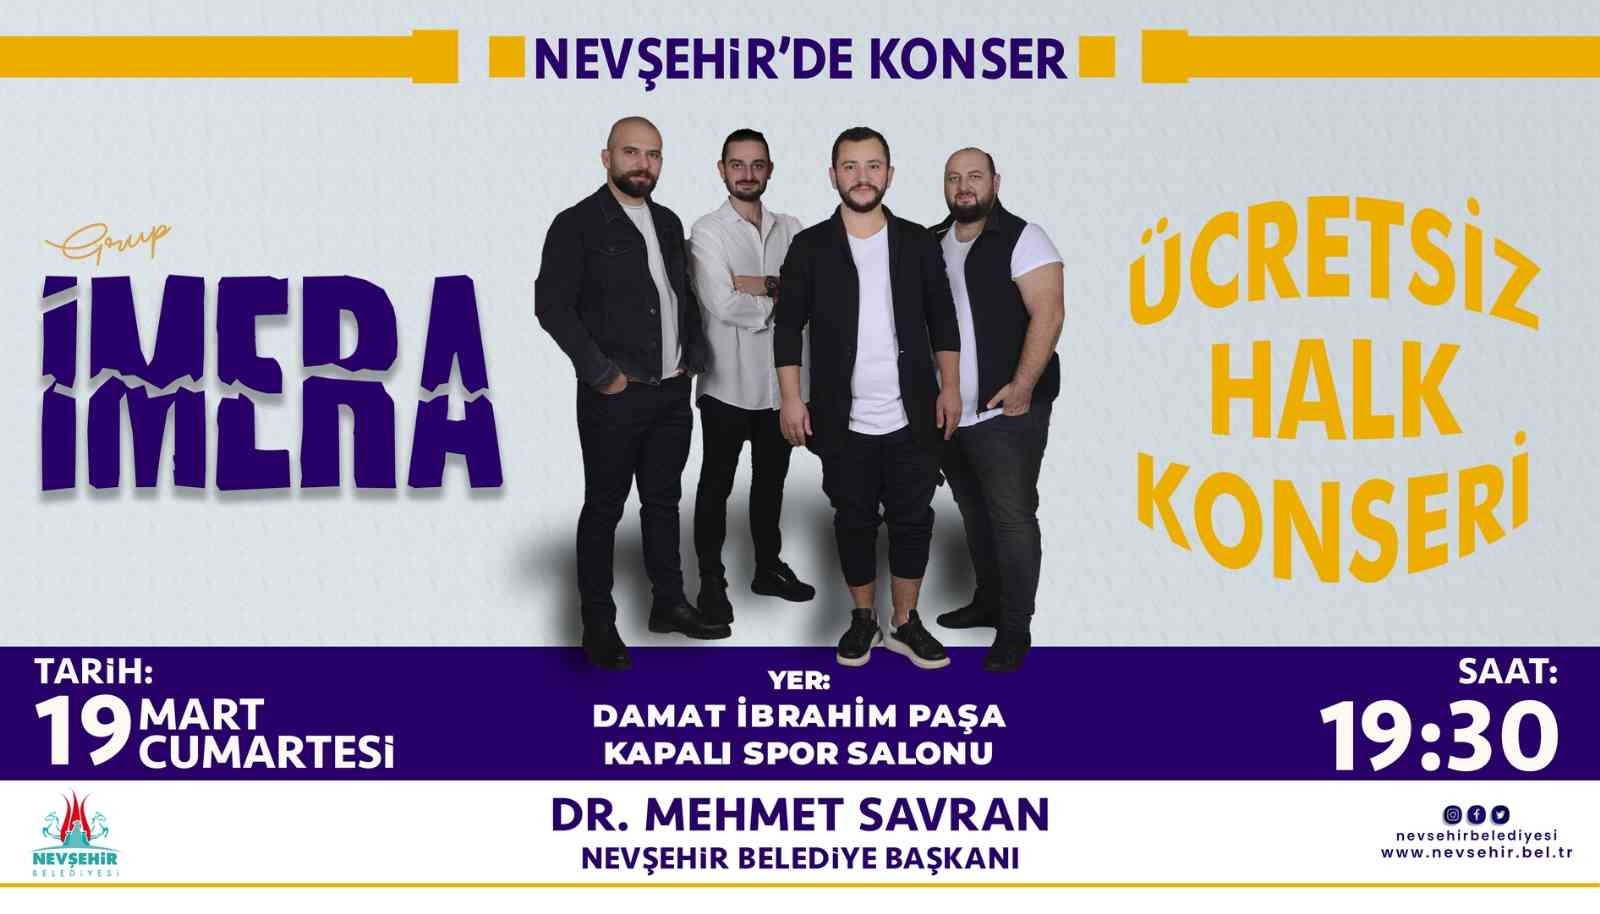 Grup İmera Nevşehir’de sahneye çıkacak